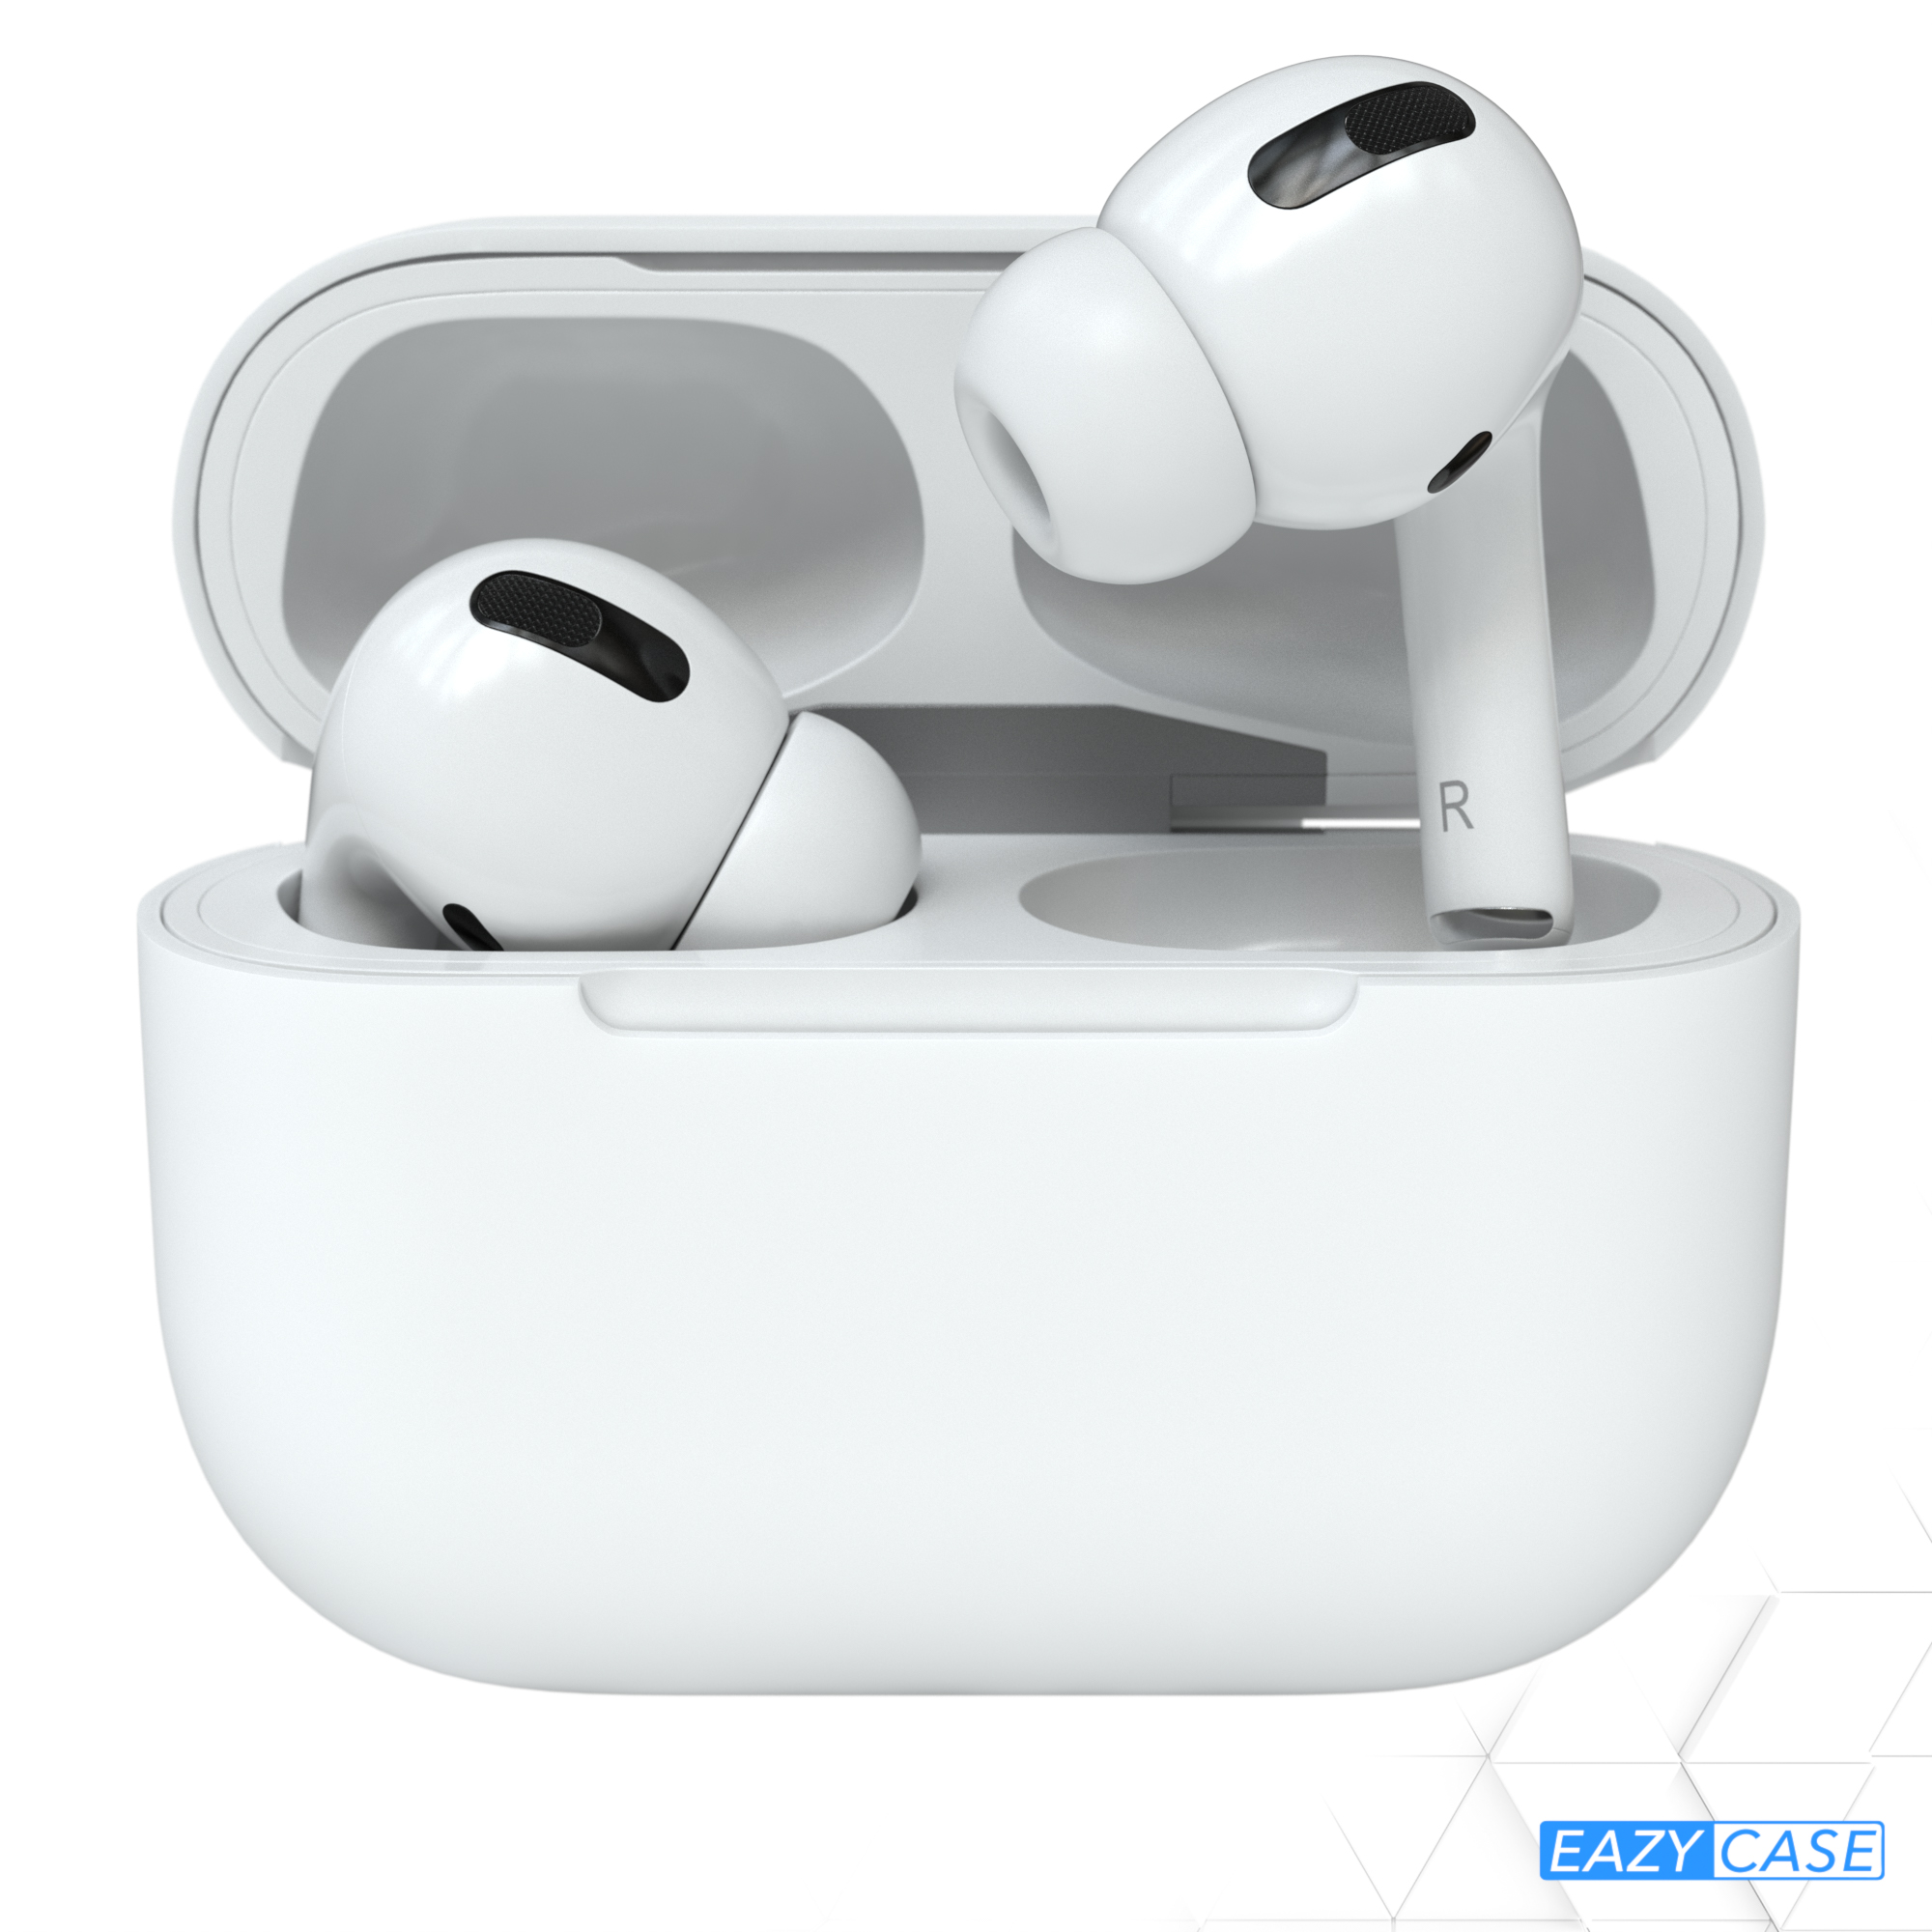 CASE passend EAZY AirPods Case Weiß für: Sleeve Schutzhülle Apple Pro Silikon